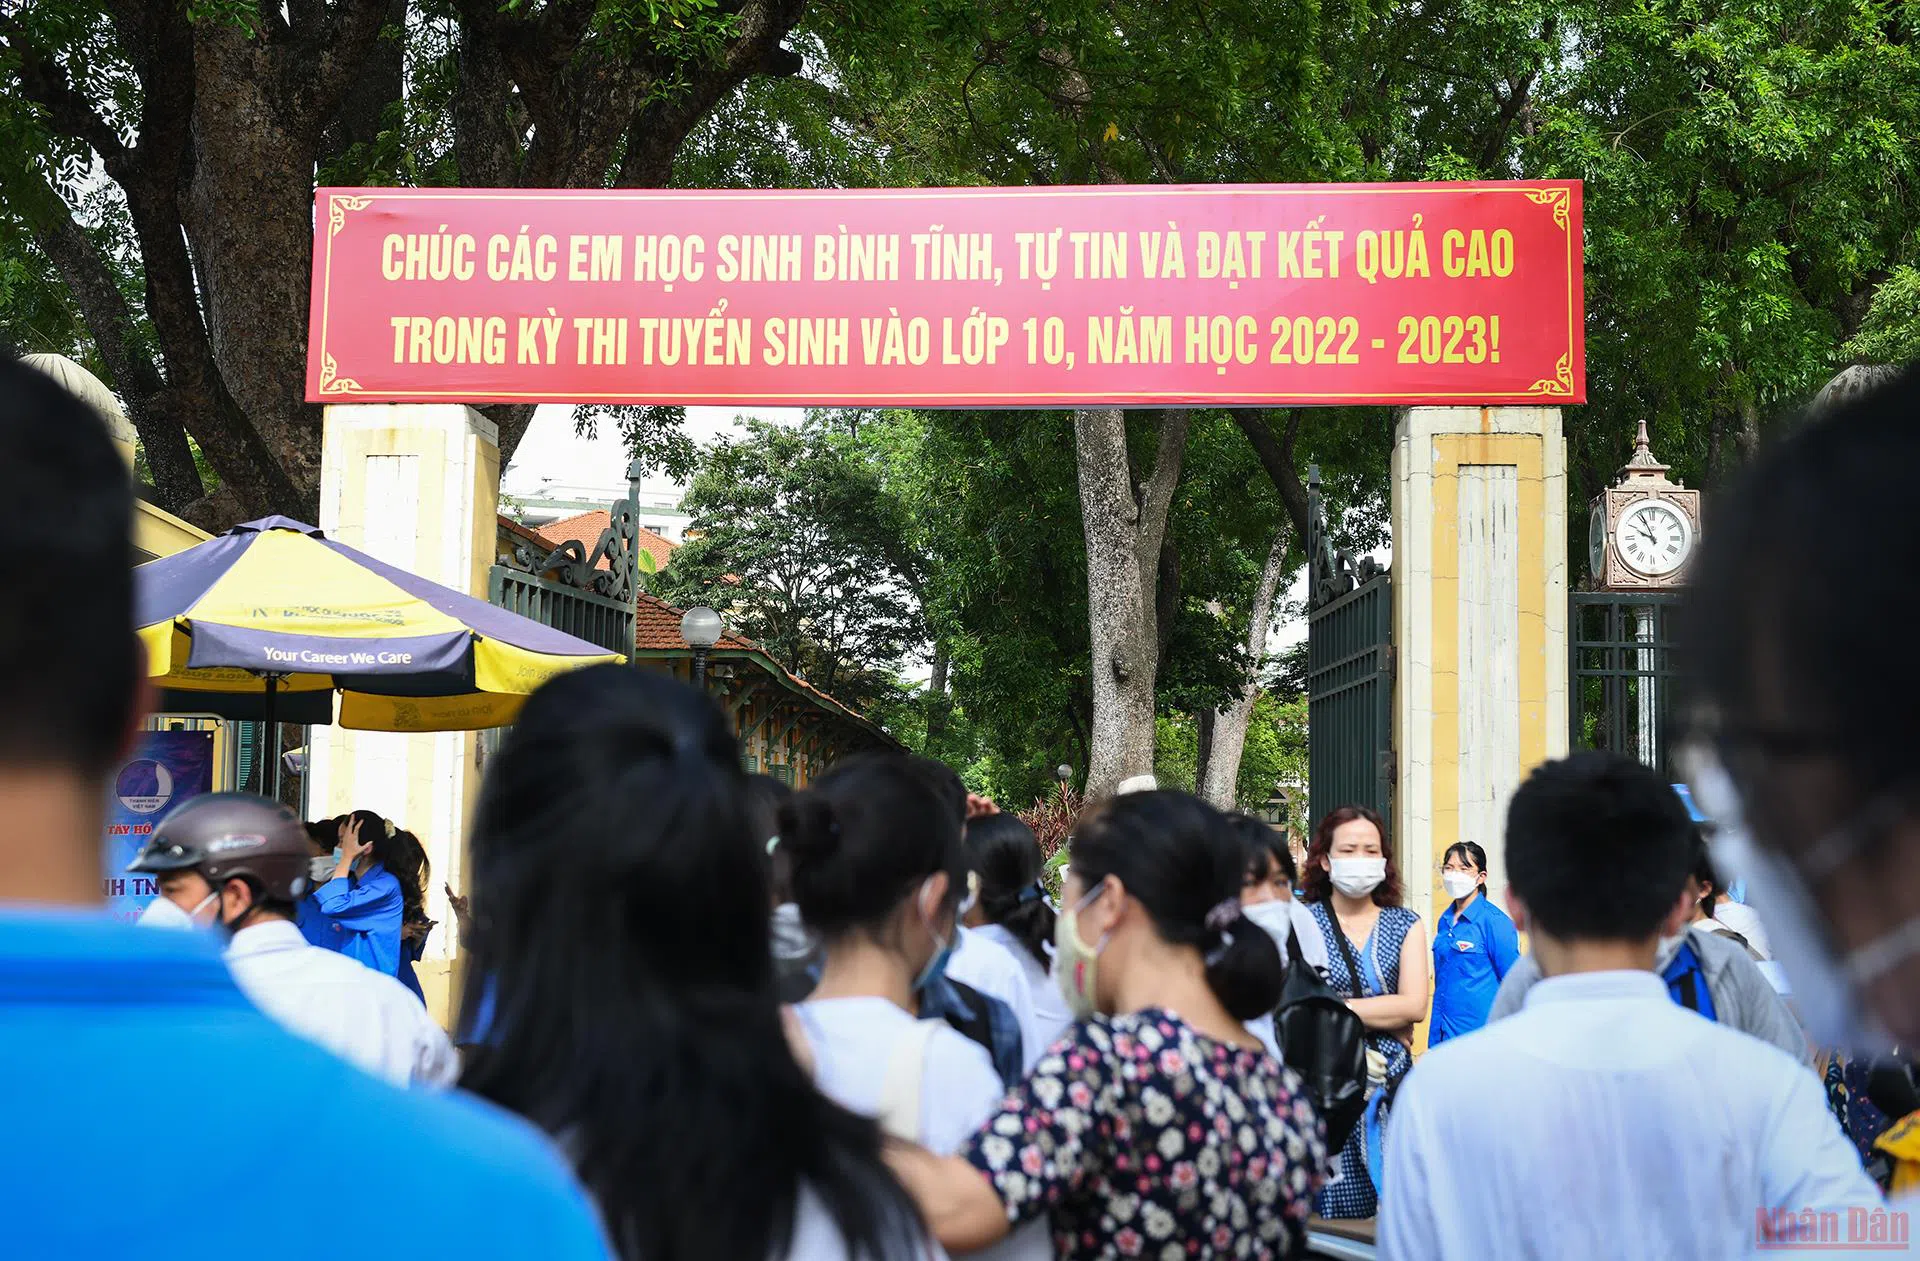 Đáp án đề thi môn Tiếng Anh kỳ thi tuyển sinh lớp 10 tỉnh Quảng Ngãi năm 2022